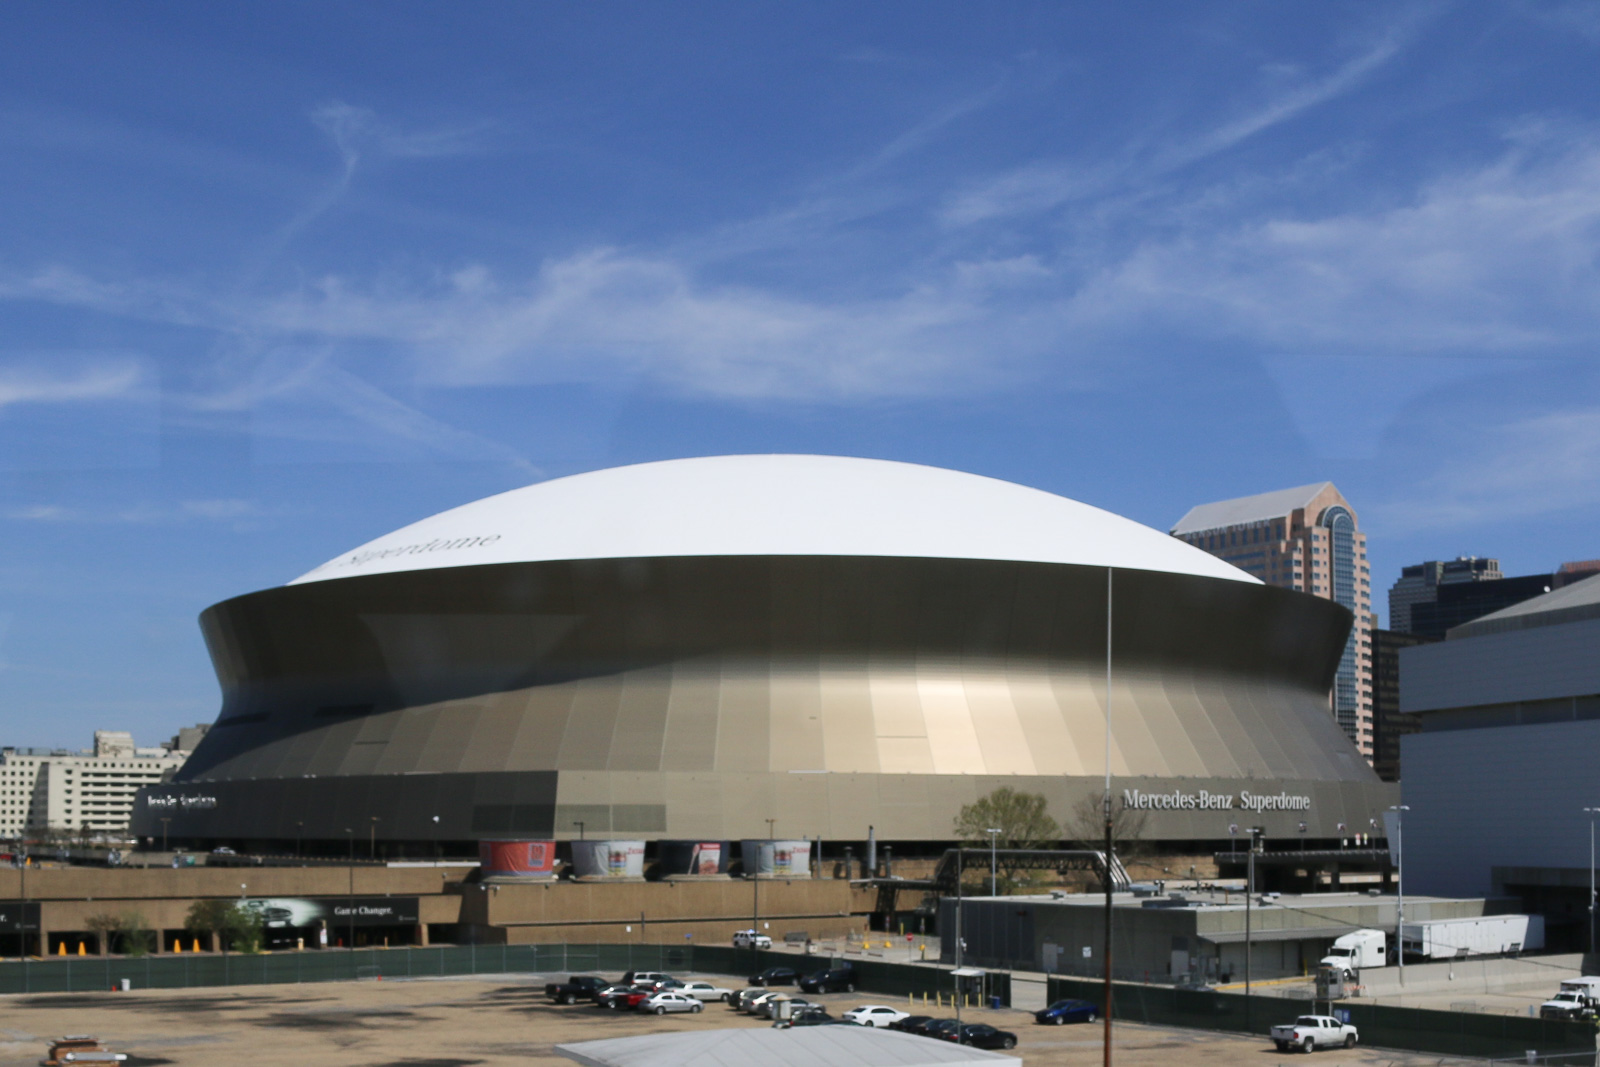 Im Superdome von New Orleans waren nach dem Hurrikan Katrina zeitweise mehrere tausend Menschen eingeschlossen. Heute wird hier wieder Sport gespielt.